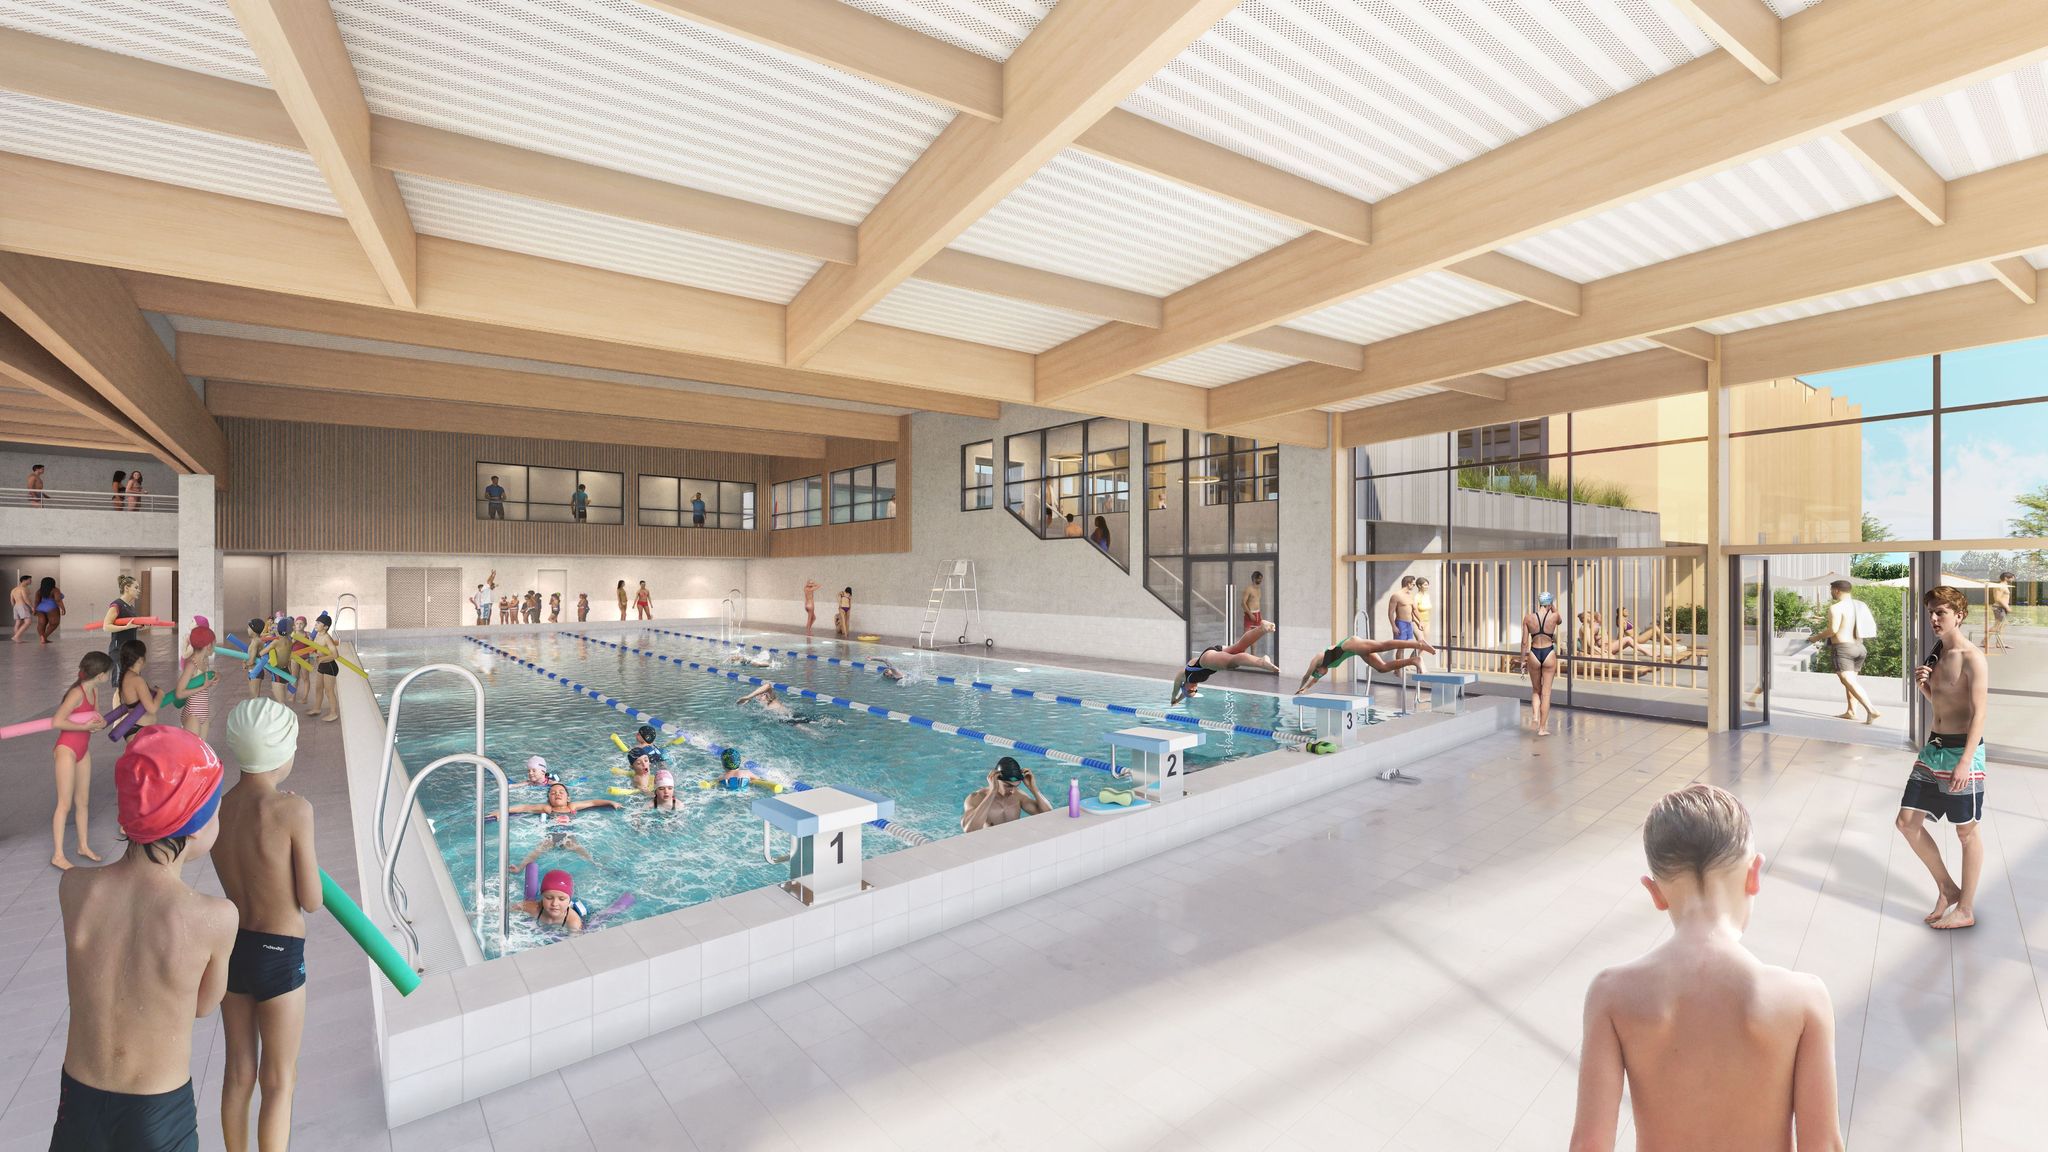 Perspective intérieure vue de la piscine pour le projet d'Extension de la piscine Béatrice Hess